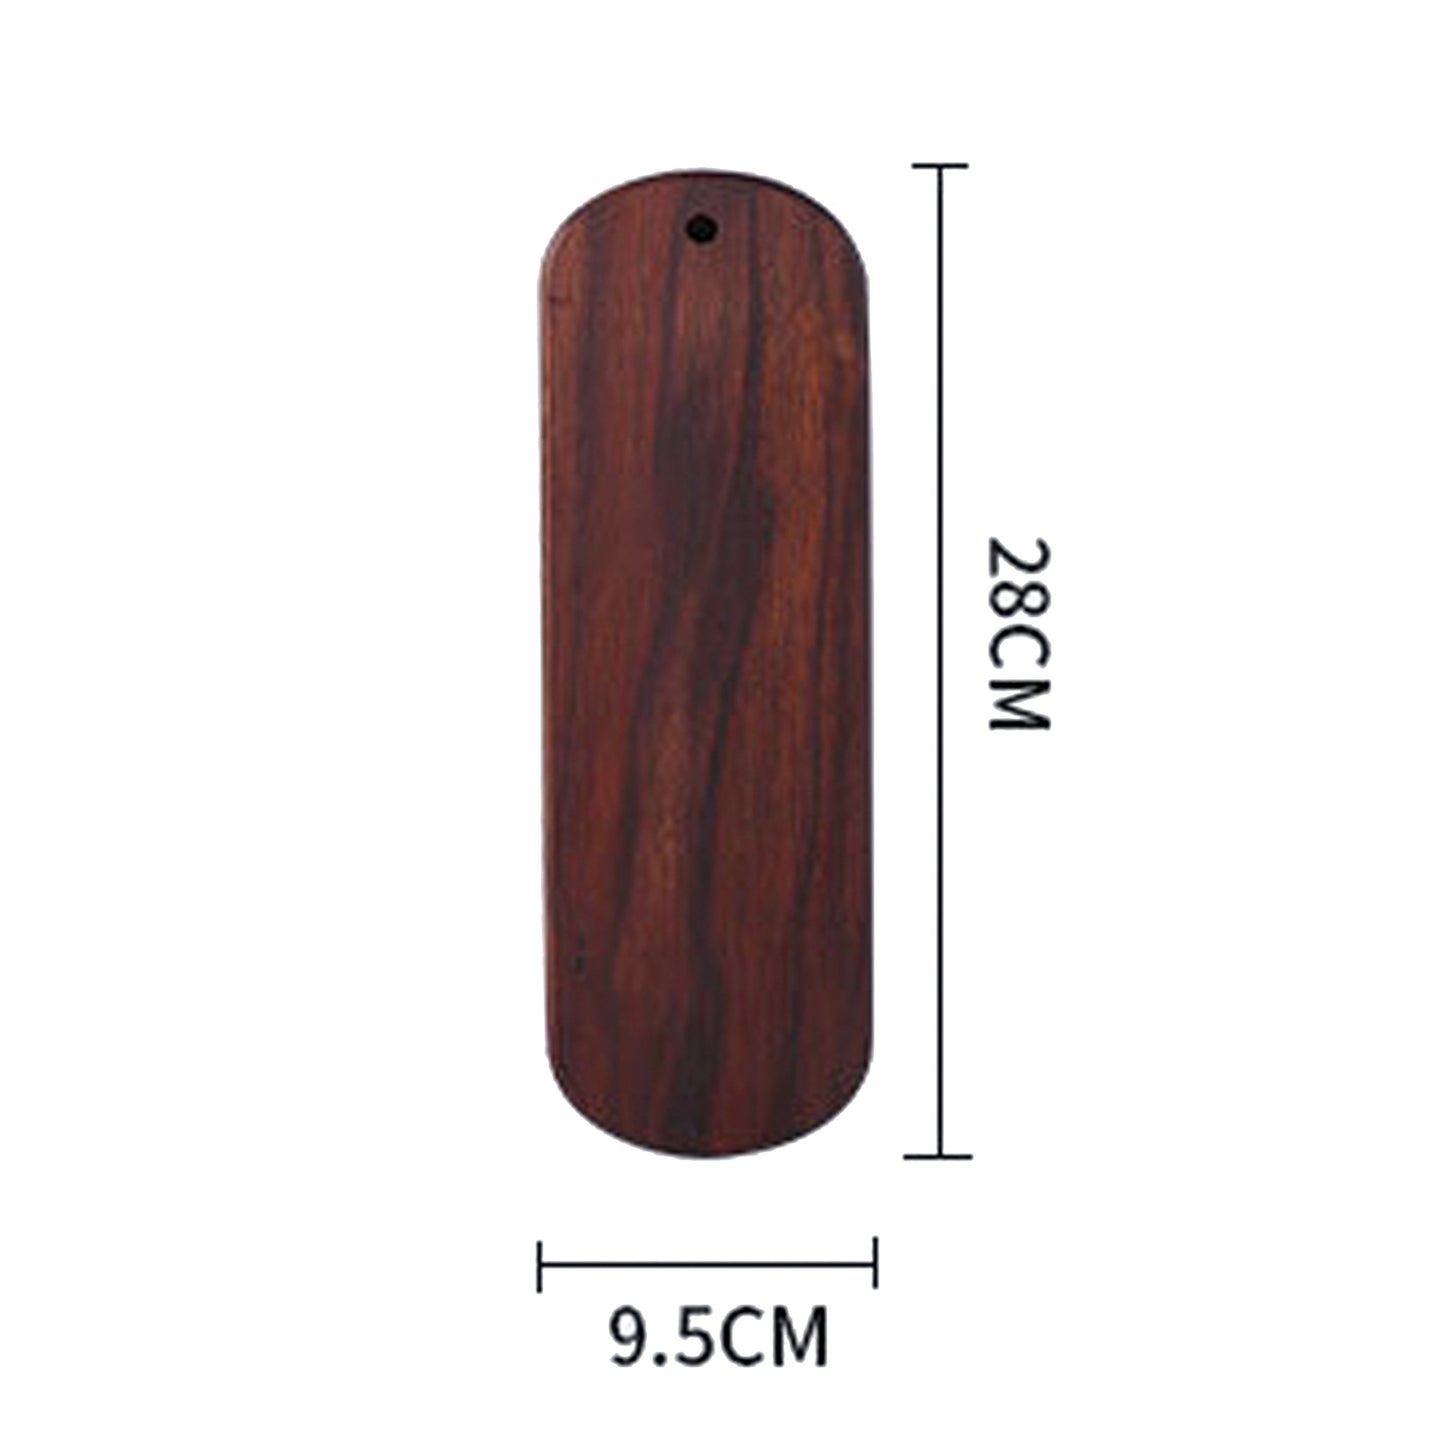 Oval Thin Walnut Wood Cutting Board